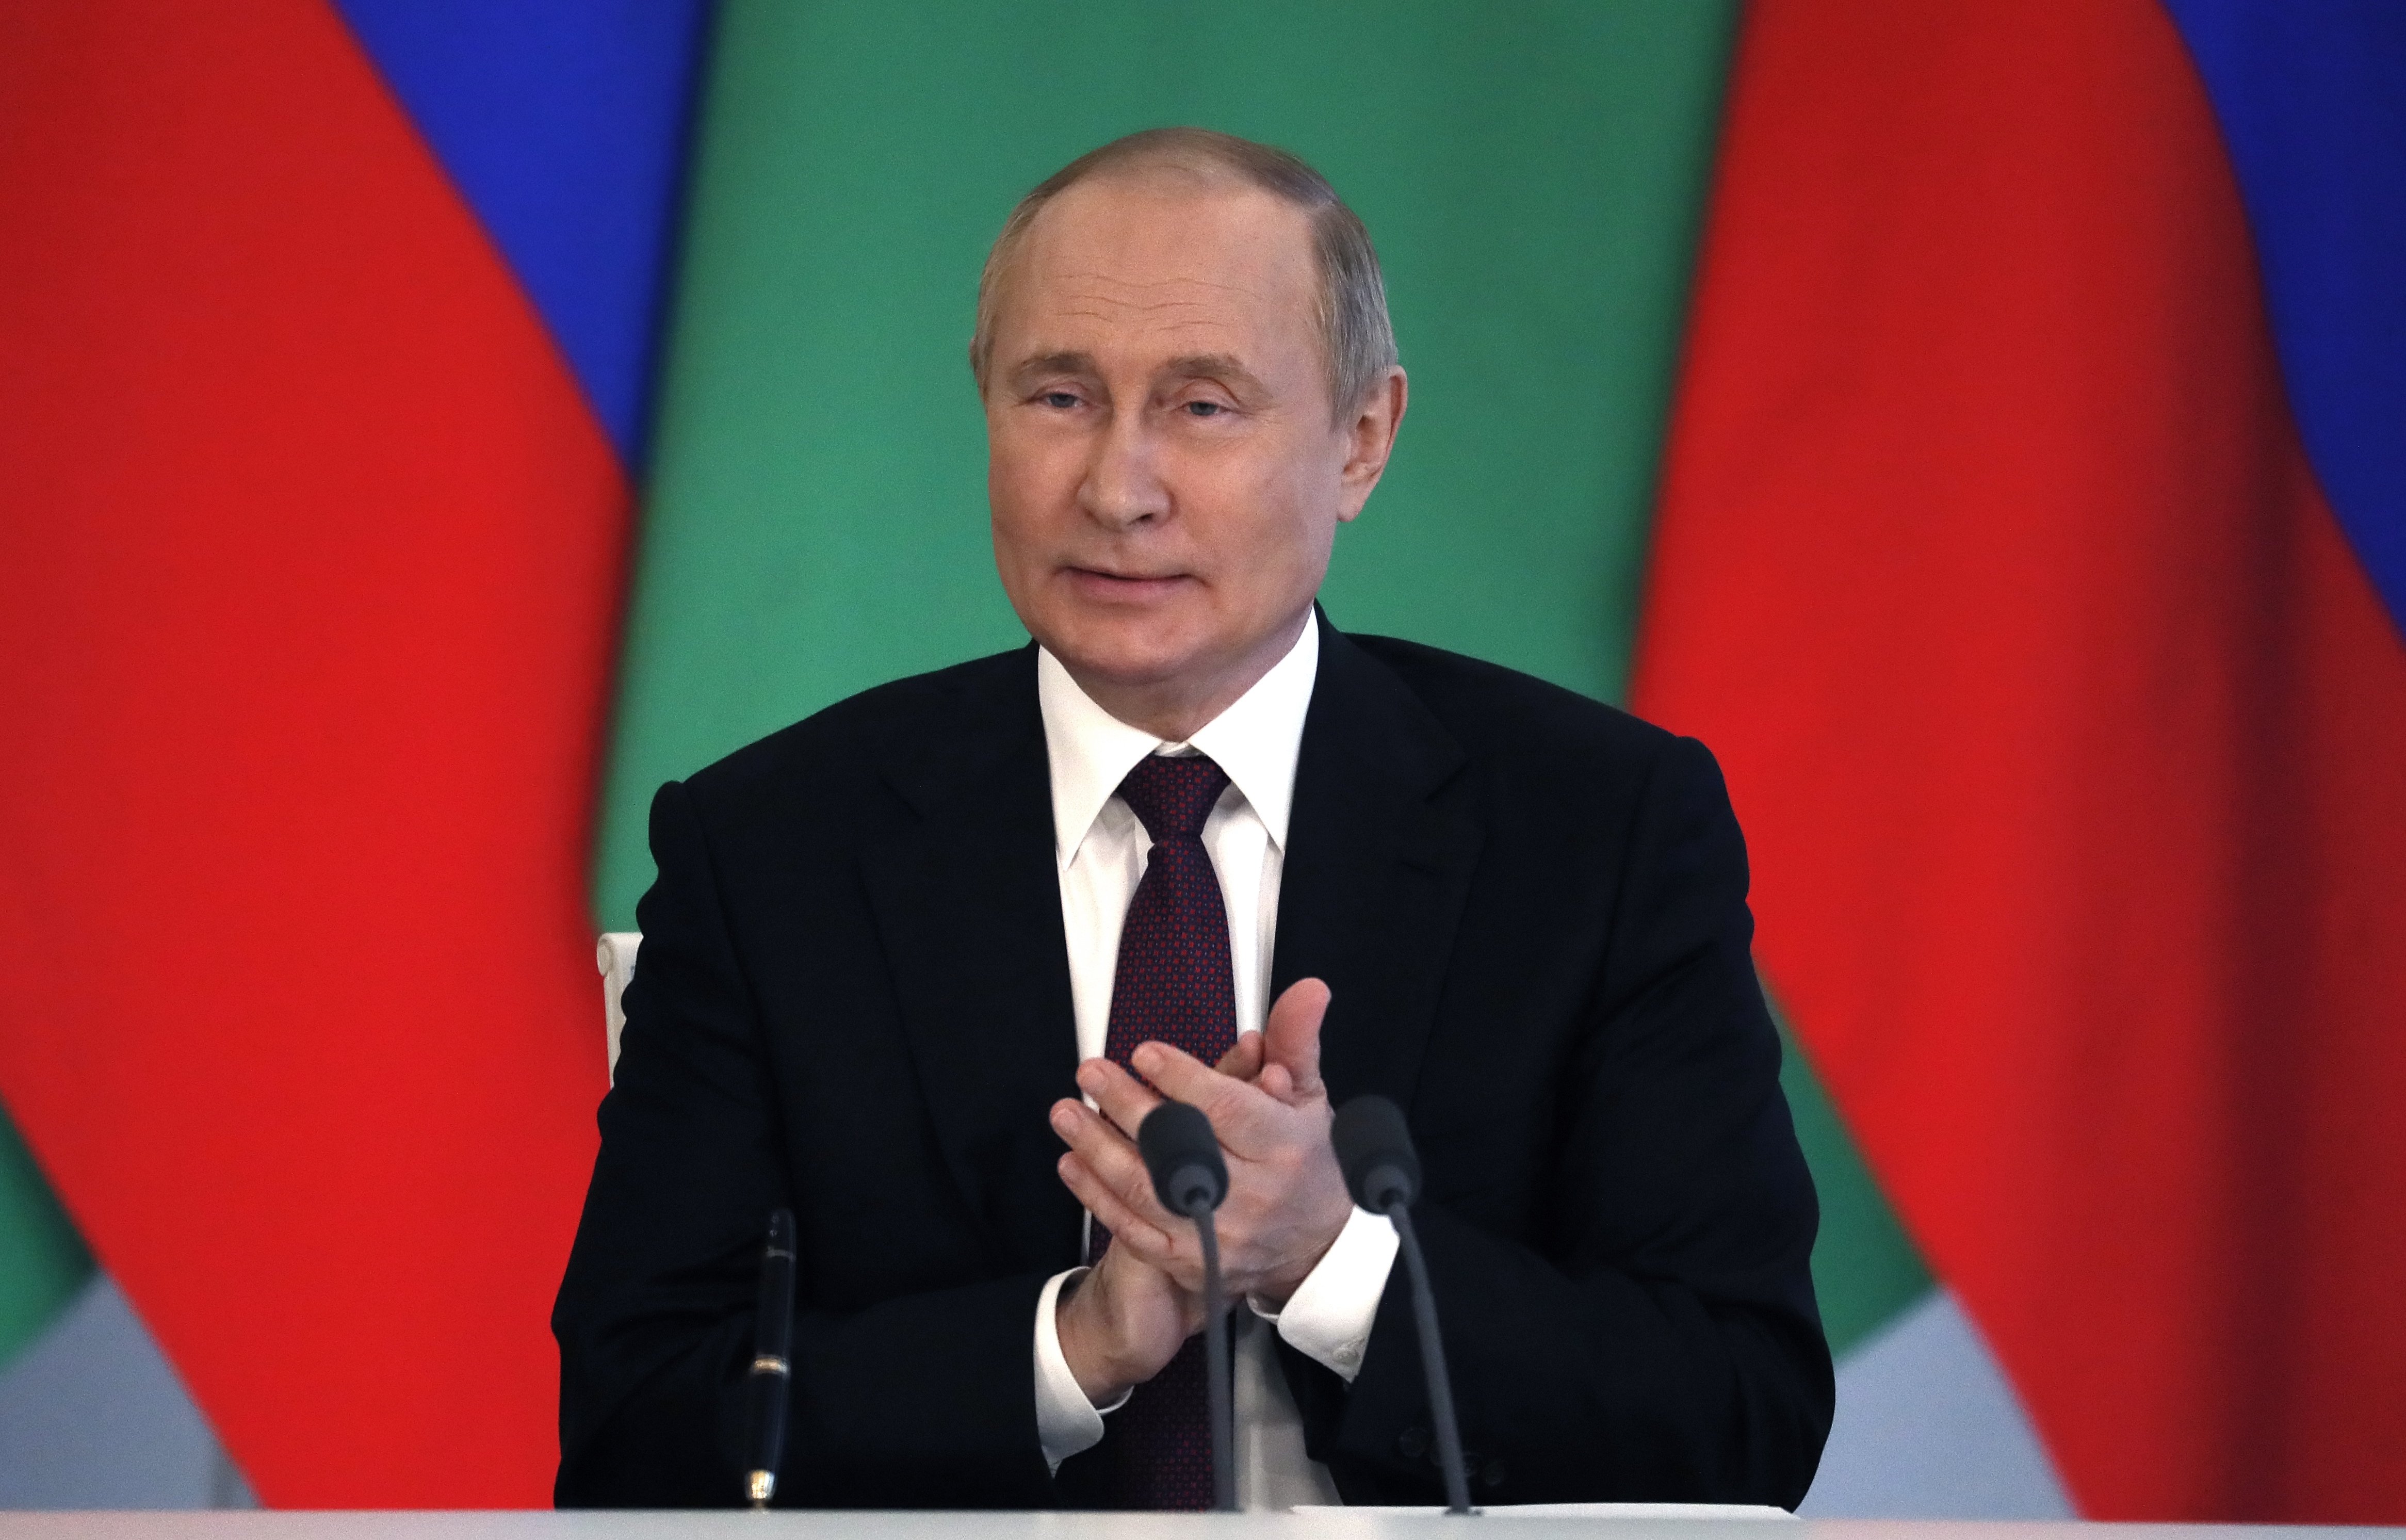 Putin proclama el fin del mundo unipolar liderado por EE.UU.